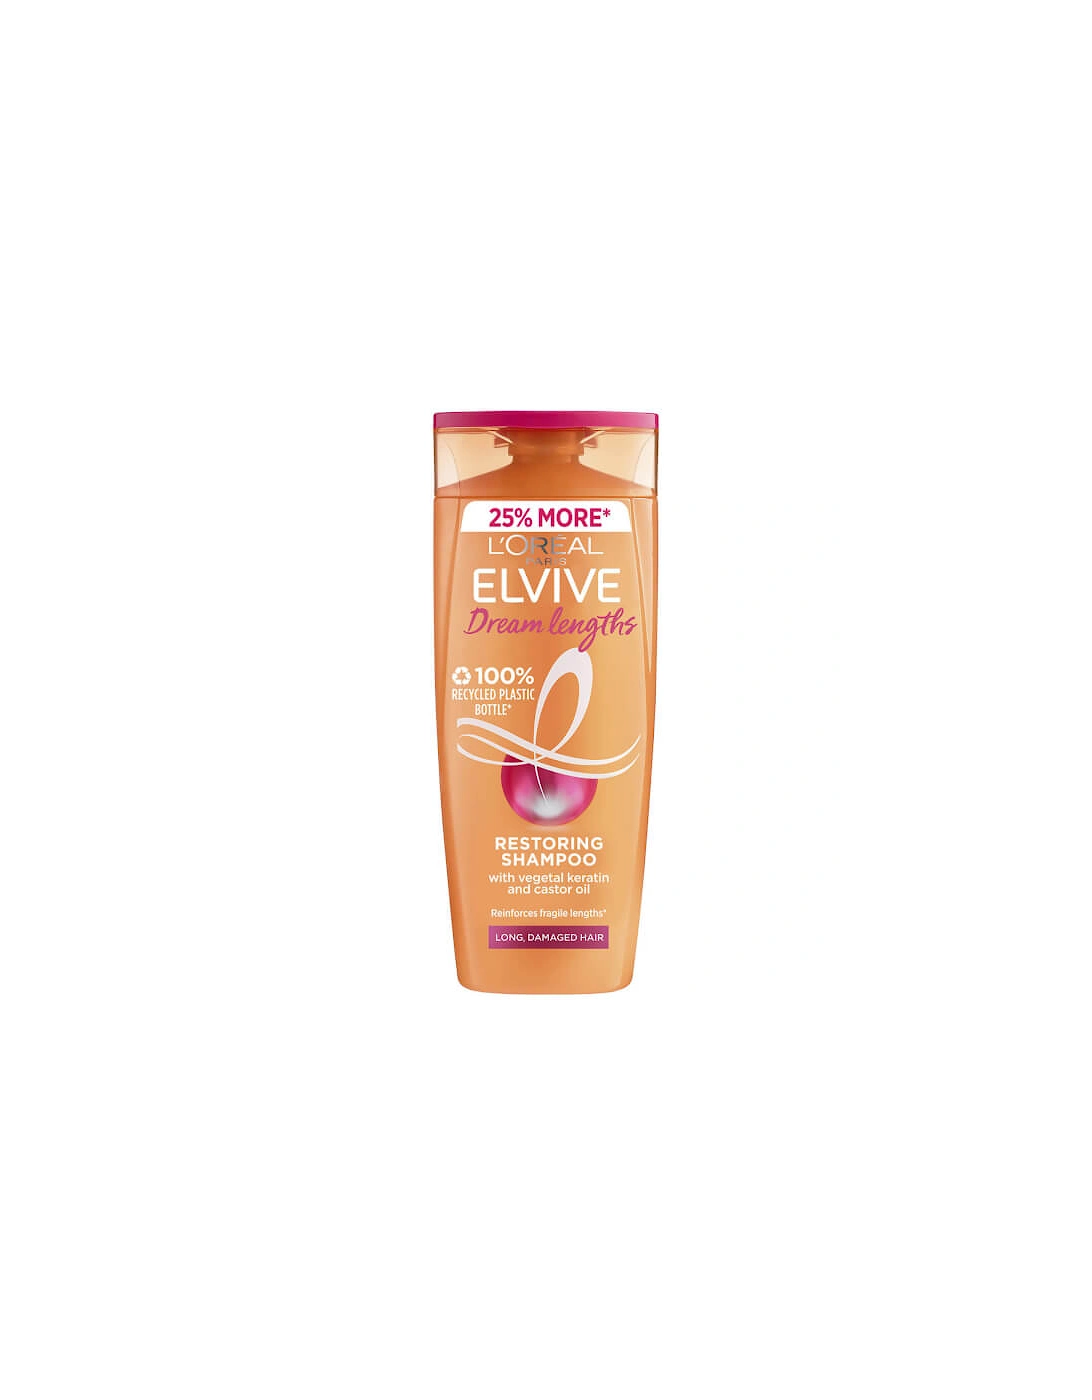 Paris Elvive Dream Lengths Long Hair Shampoo 500ml, 2 of 1